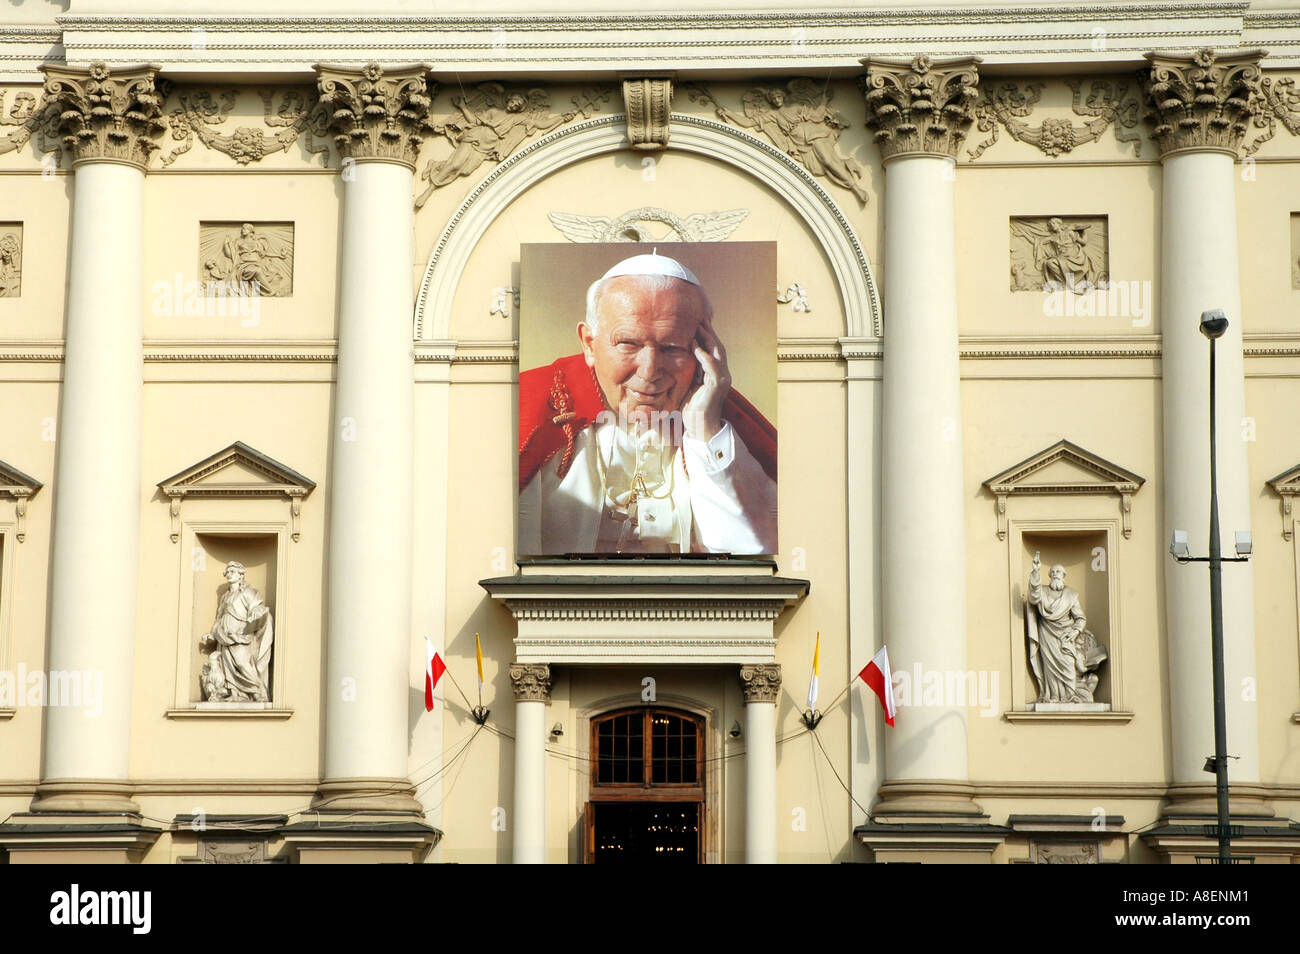 Premier anniversaire de la mort du pape Jean-Paul II à Varsovie. Masse en face de l'église de Saint Anna. Banque D'Images